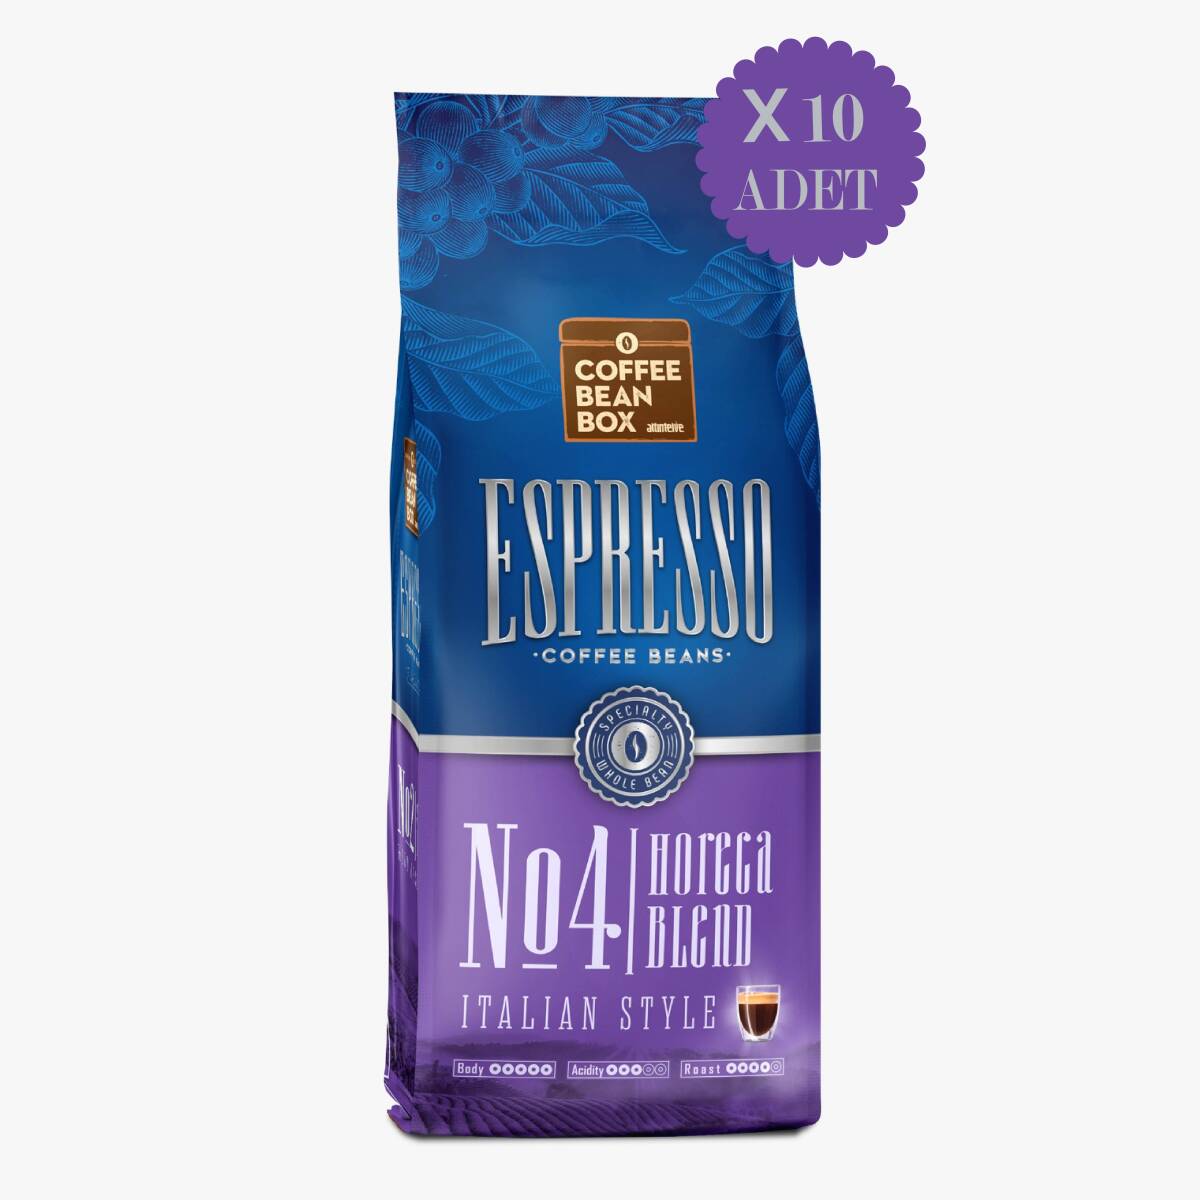 Coffee Bean Box Altıntelve Horeca Blend Espresso Çekirdek Kahve 1 kg 10 Adet - 1